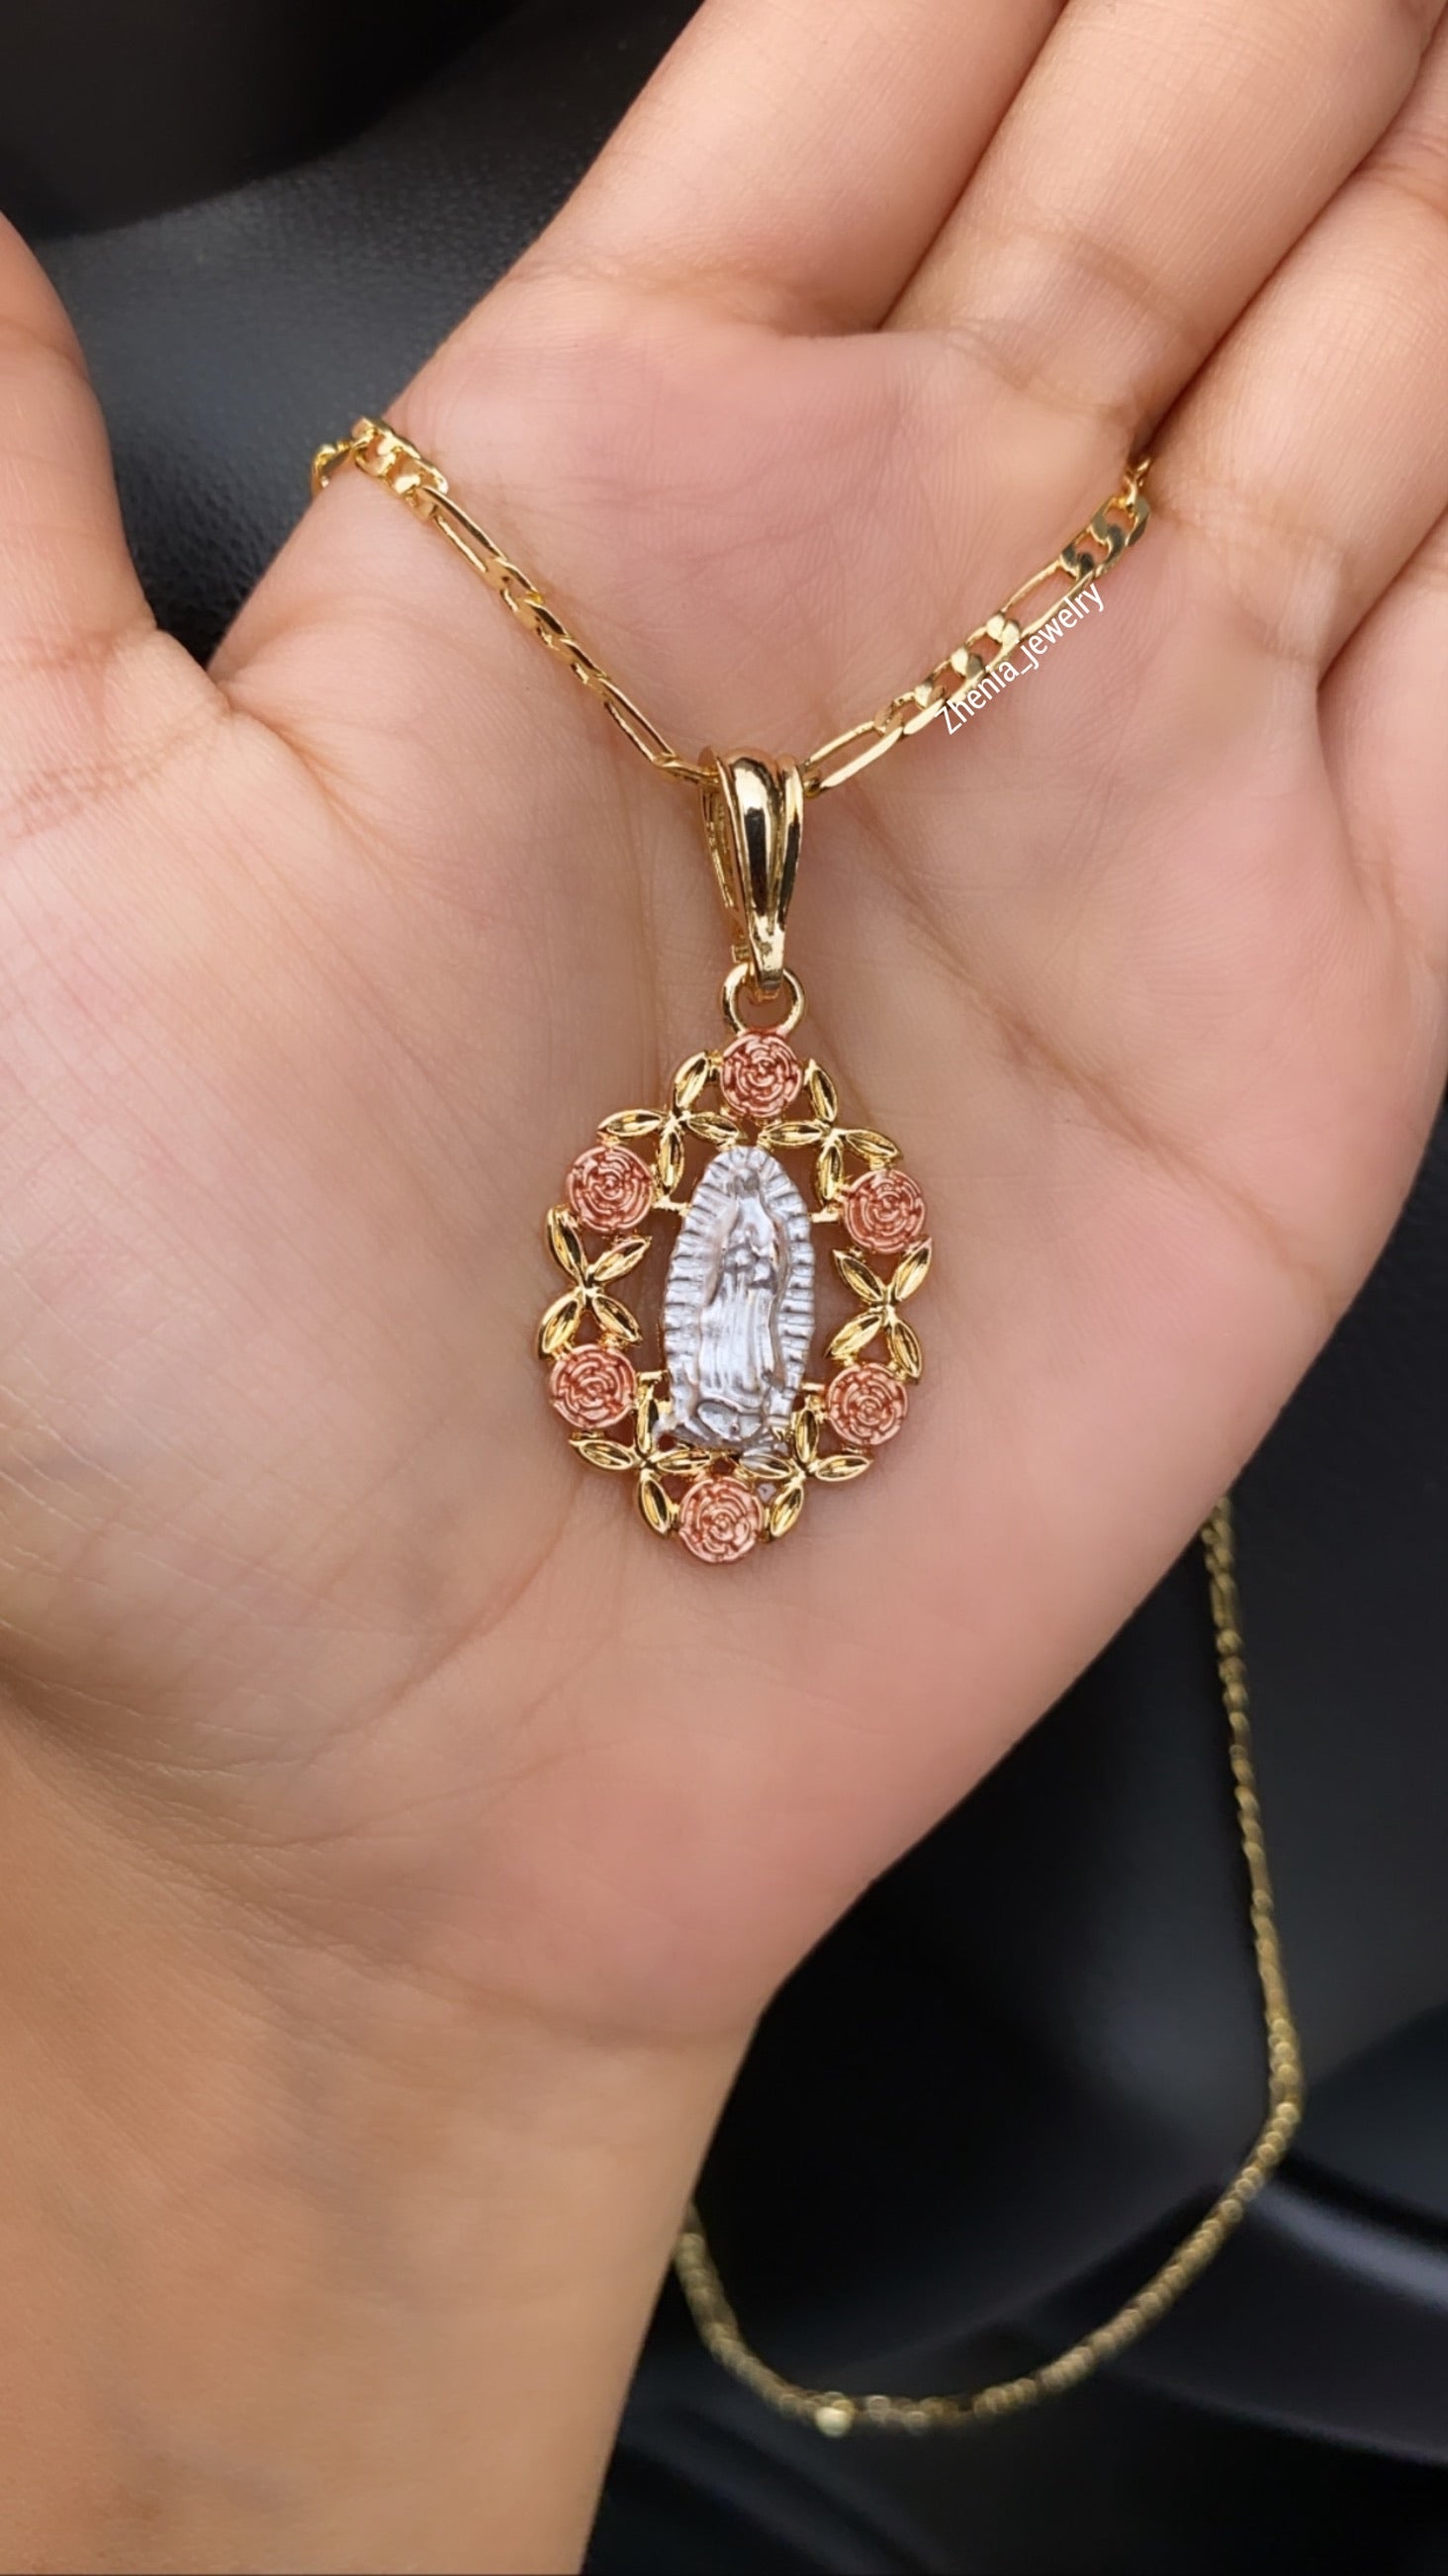 Rosa de Guadalupe necklace